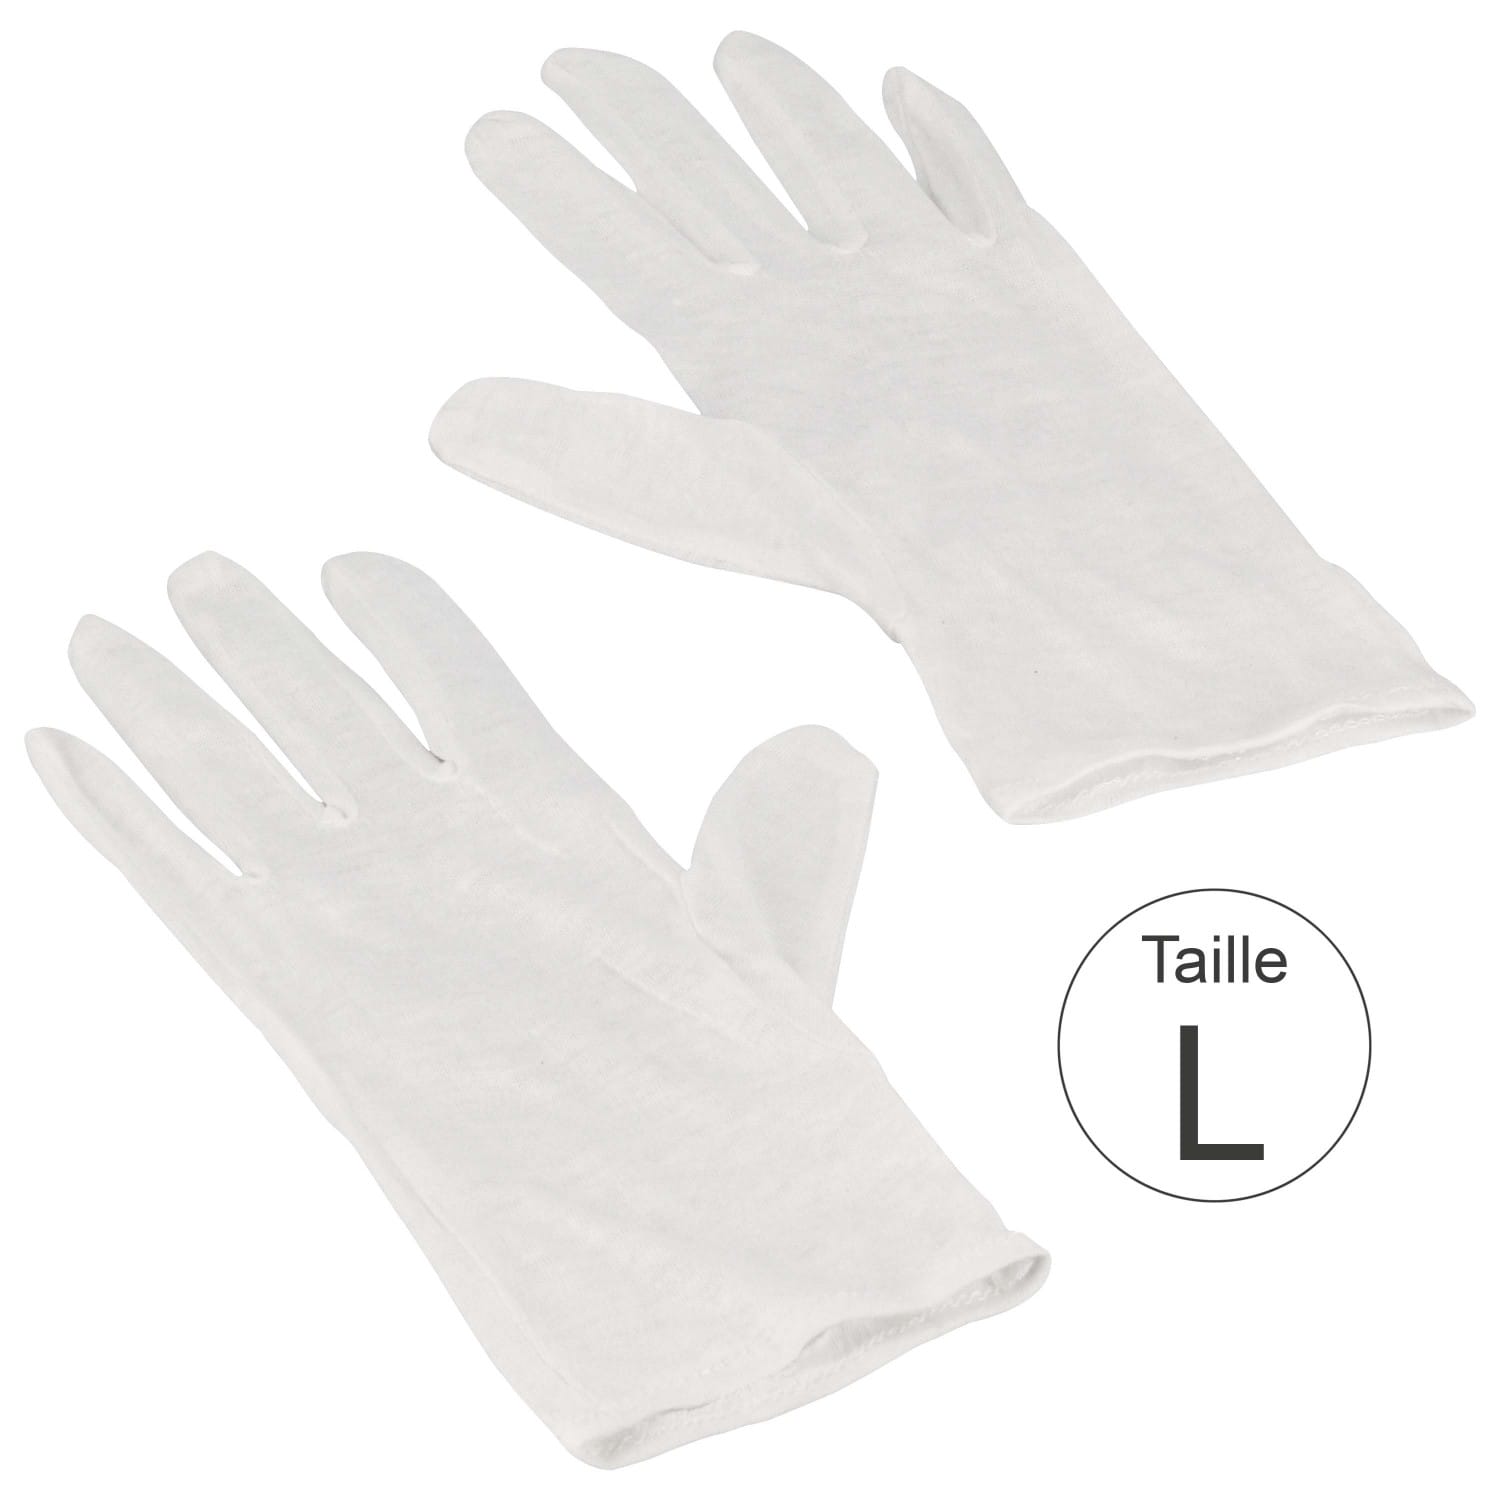 Gants blancs 100% coton naturel - Haute qualité - Taille L (9